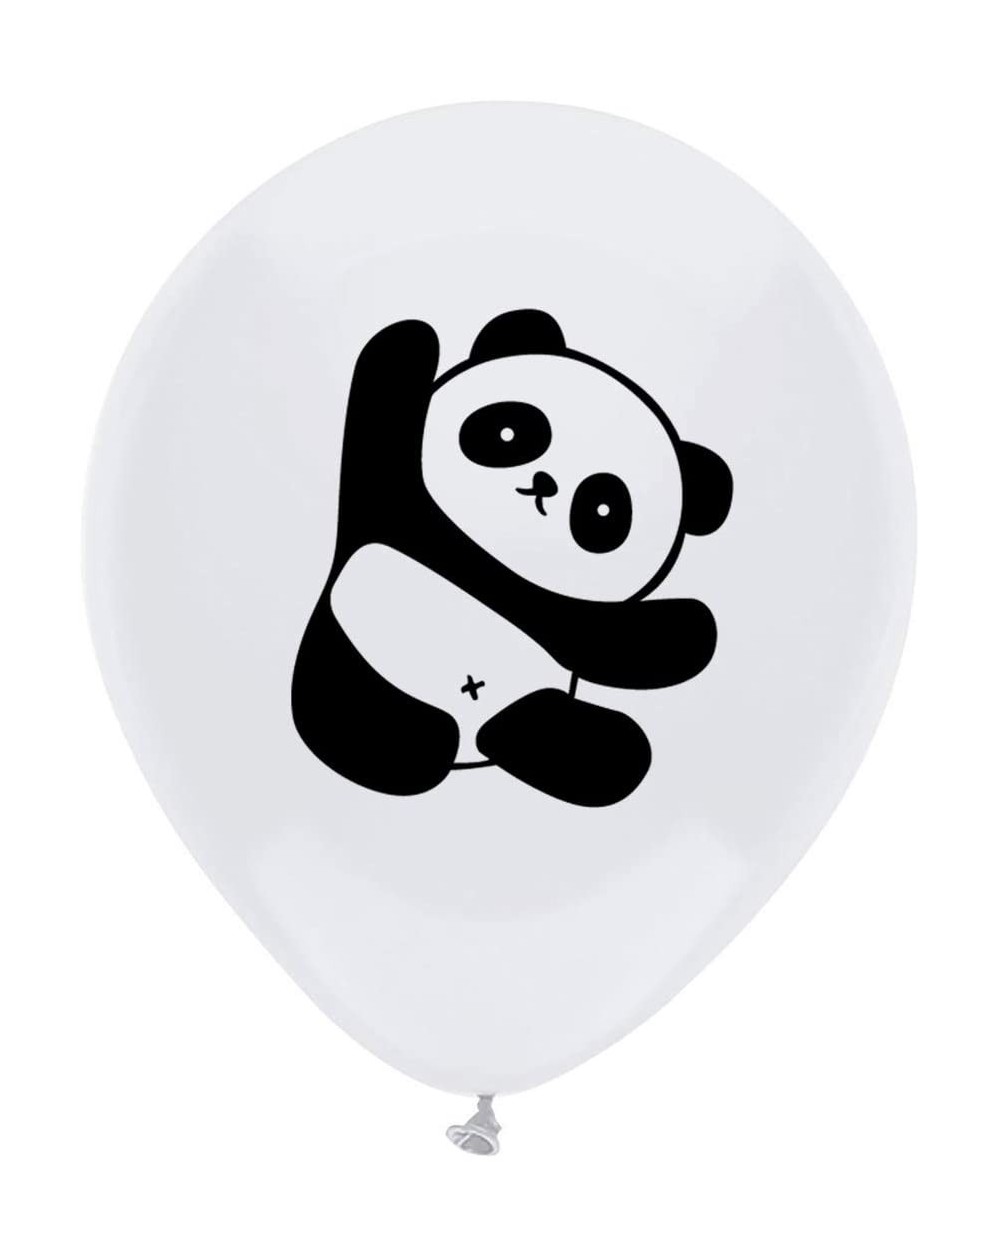 Balloons Panda Latex Balloons- 16-Pack 12inch Panda Printed Birthday Party Balloon- Decorations- Supplies - CV18SIZDIMG $10.78